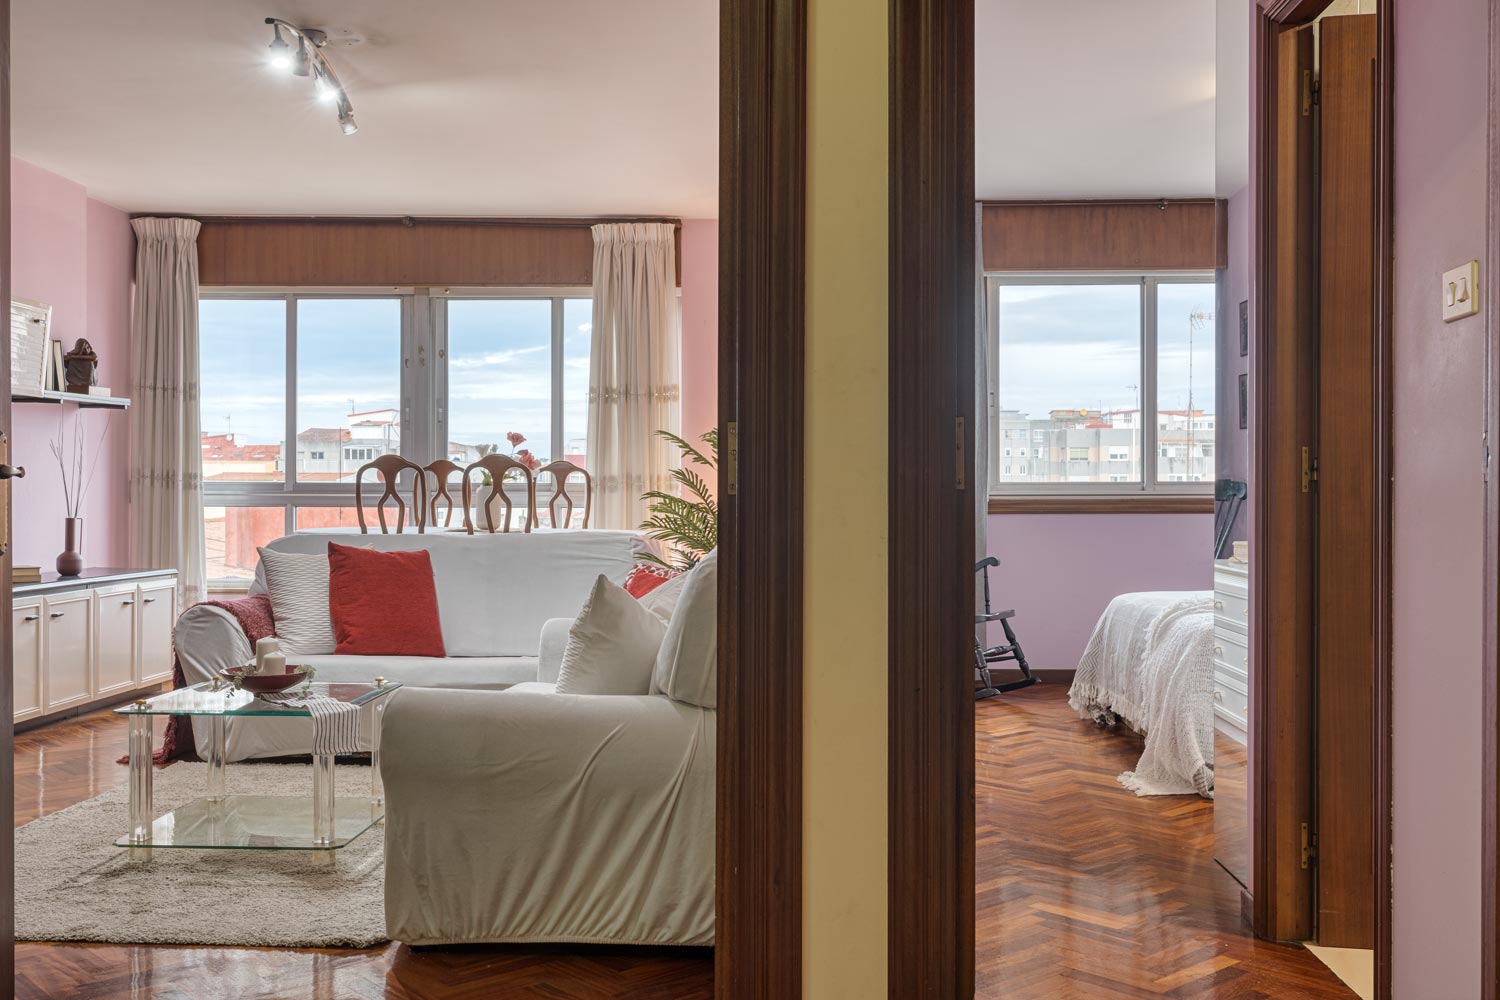 Espacioso salón y dormitorio con grandes ventanas que ofrecen luz natural, combinando tonos de rosa en las paredes y cojines con un sofá blanco y mesa de centro de vidrio